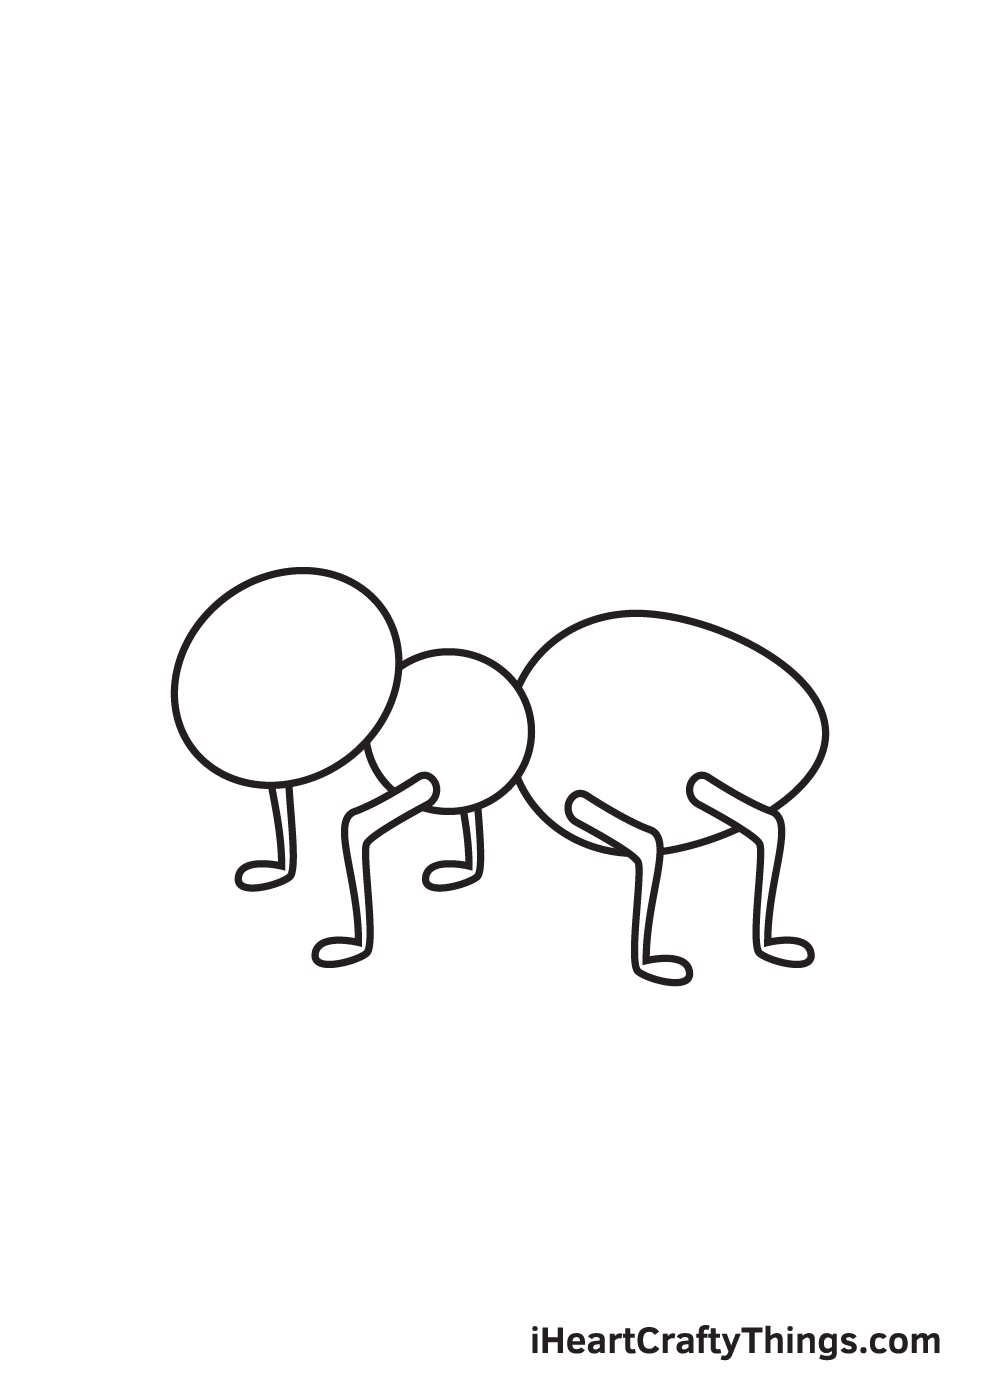 Ant DRAWING – STEP 6 - Hướng dẫn chi tiết cách vẽ con kiến đơn giản với 9 bước cơ bản